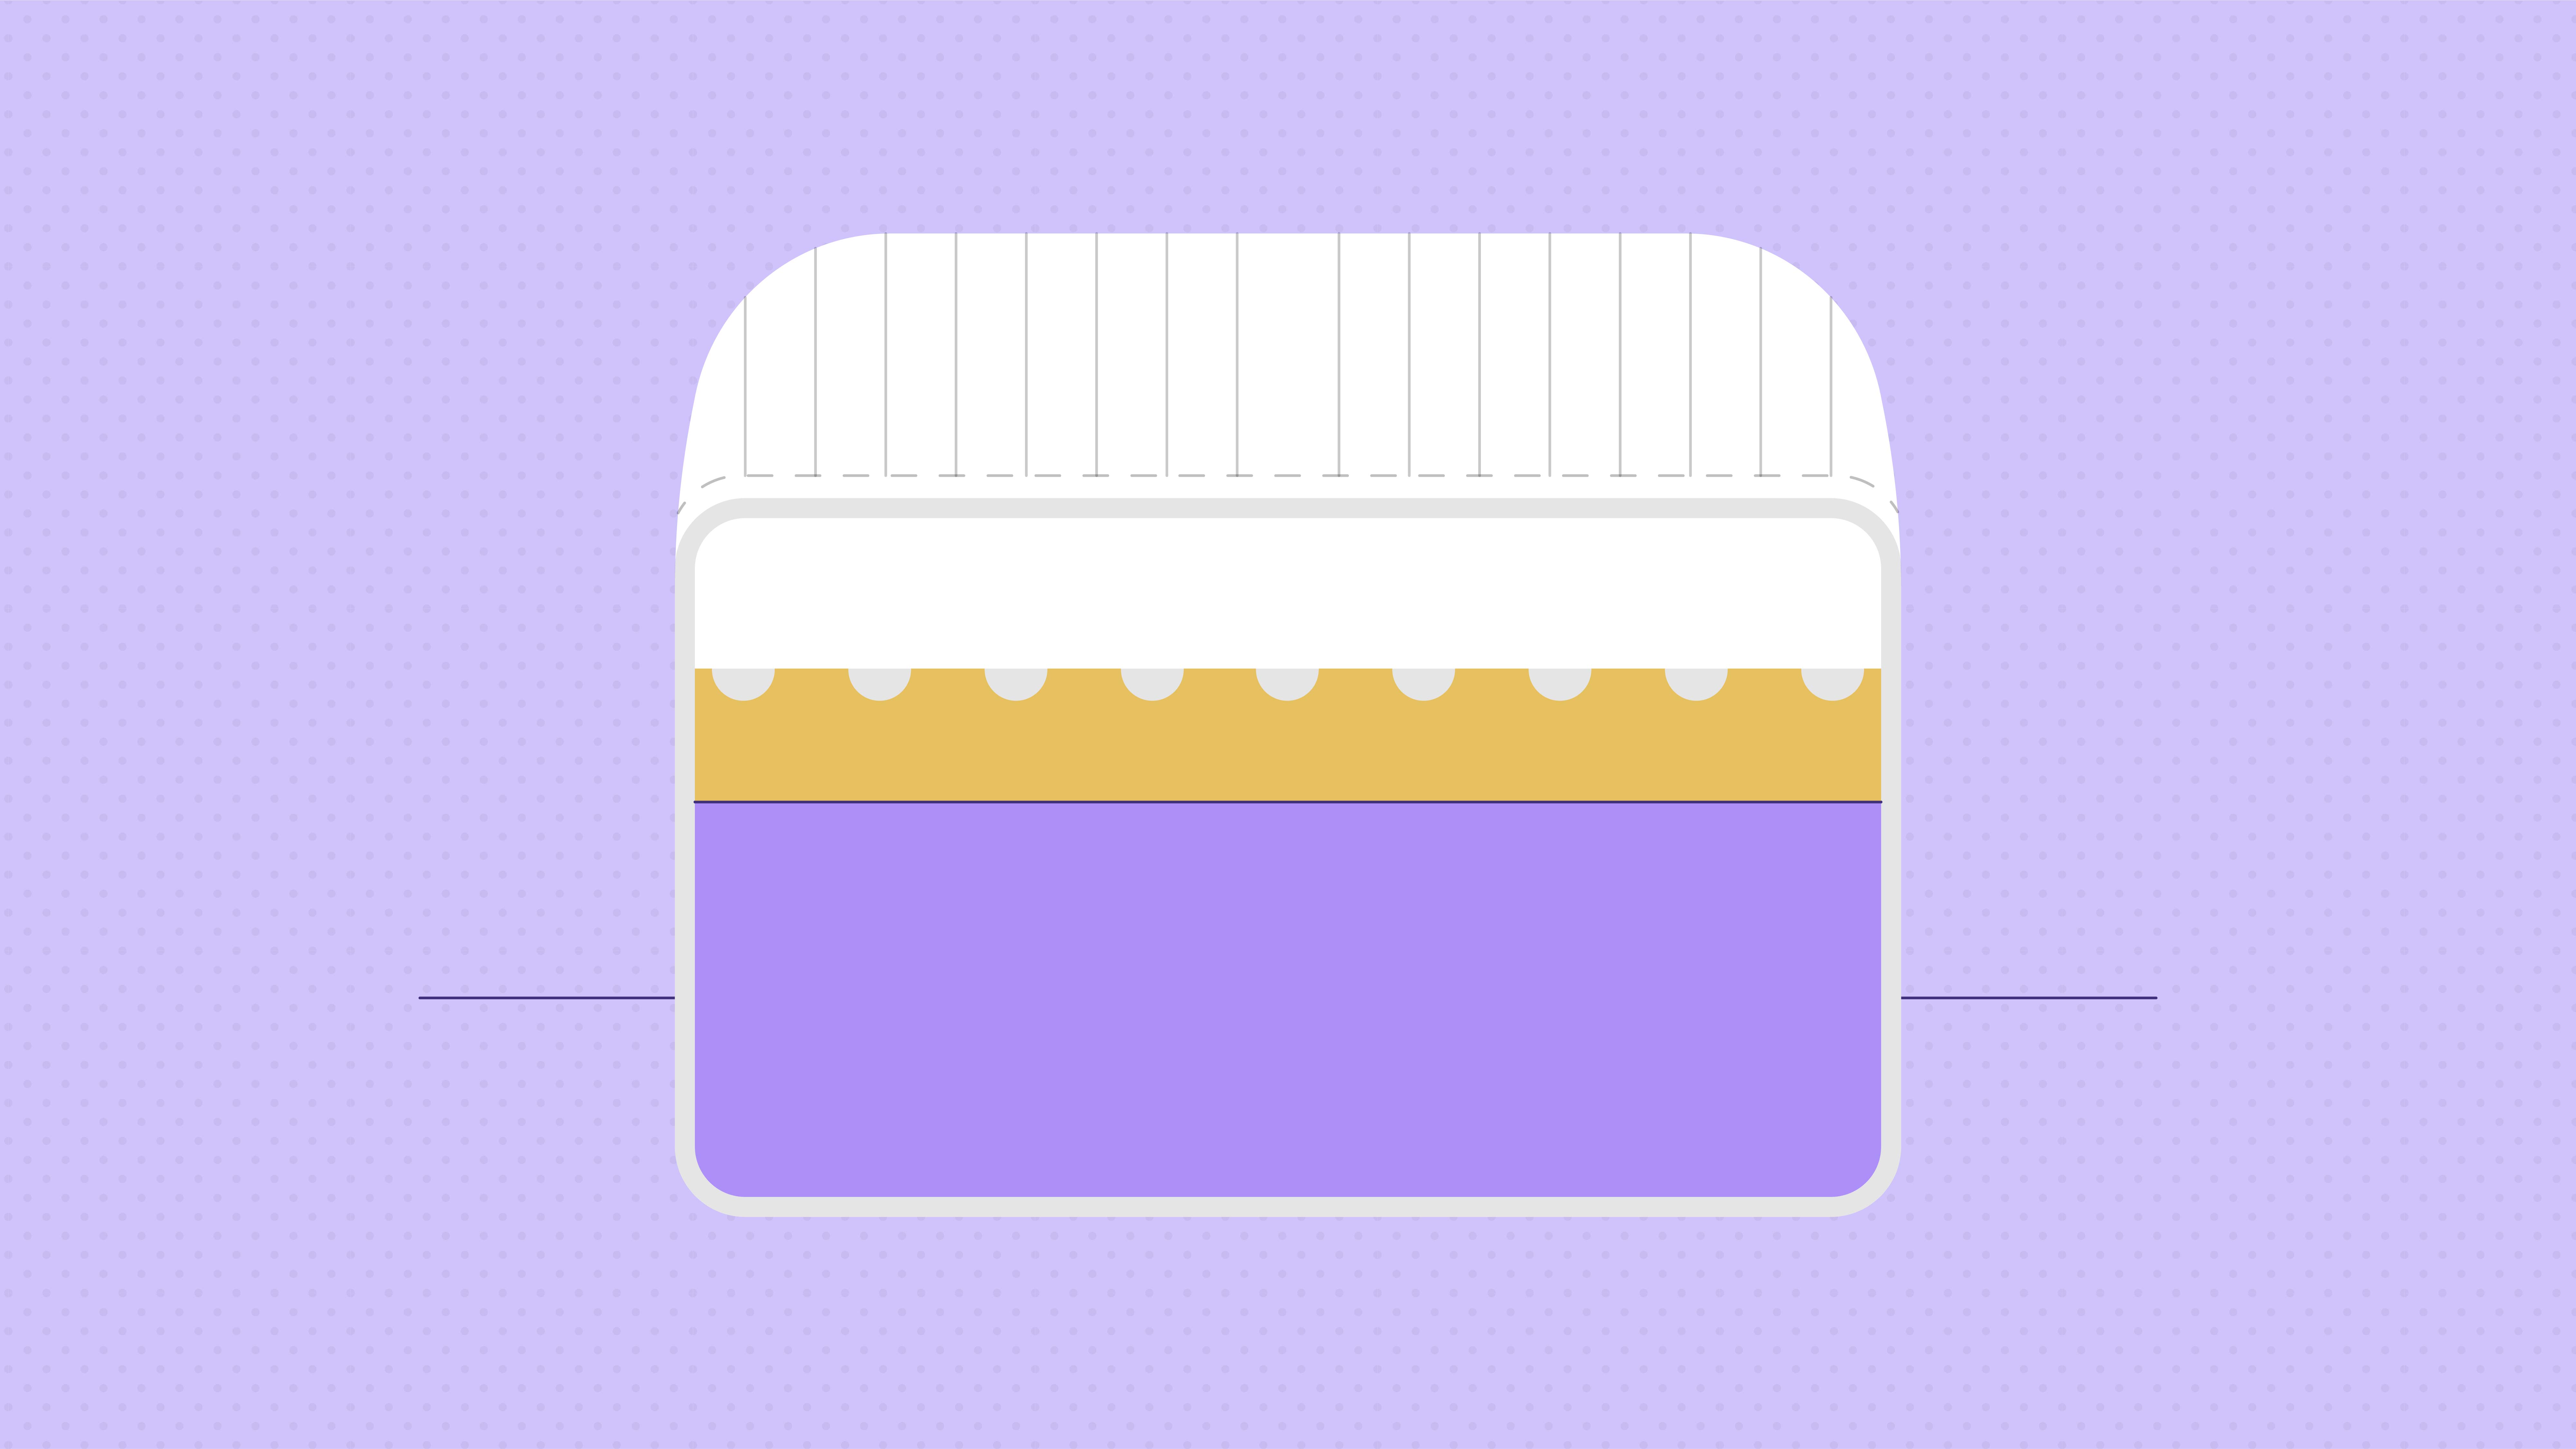 memory foam mattress density